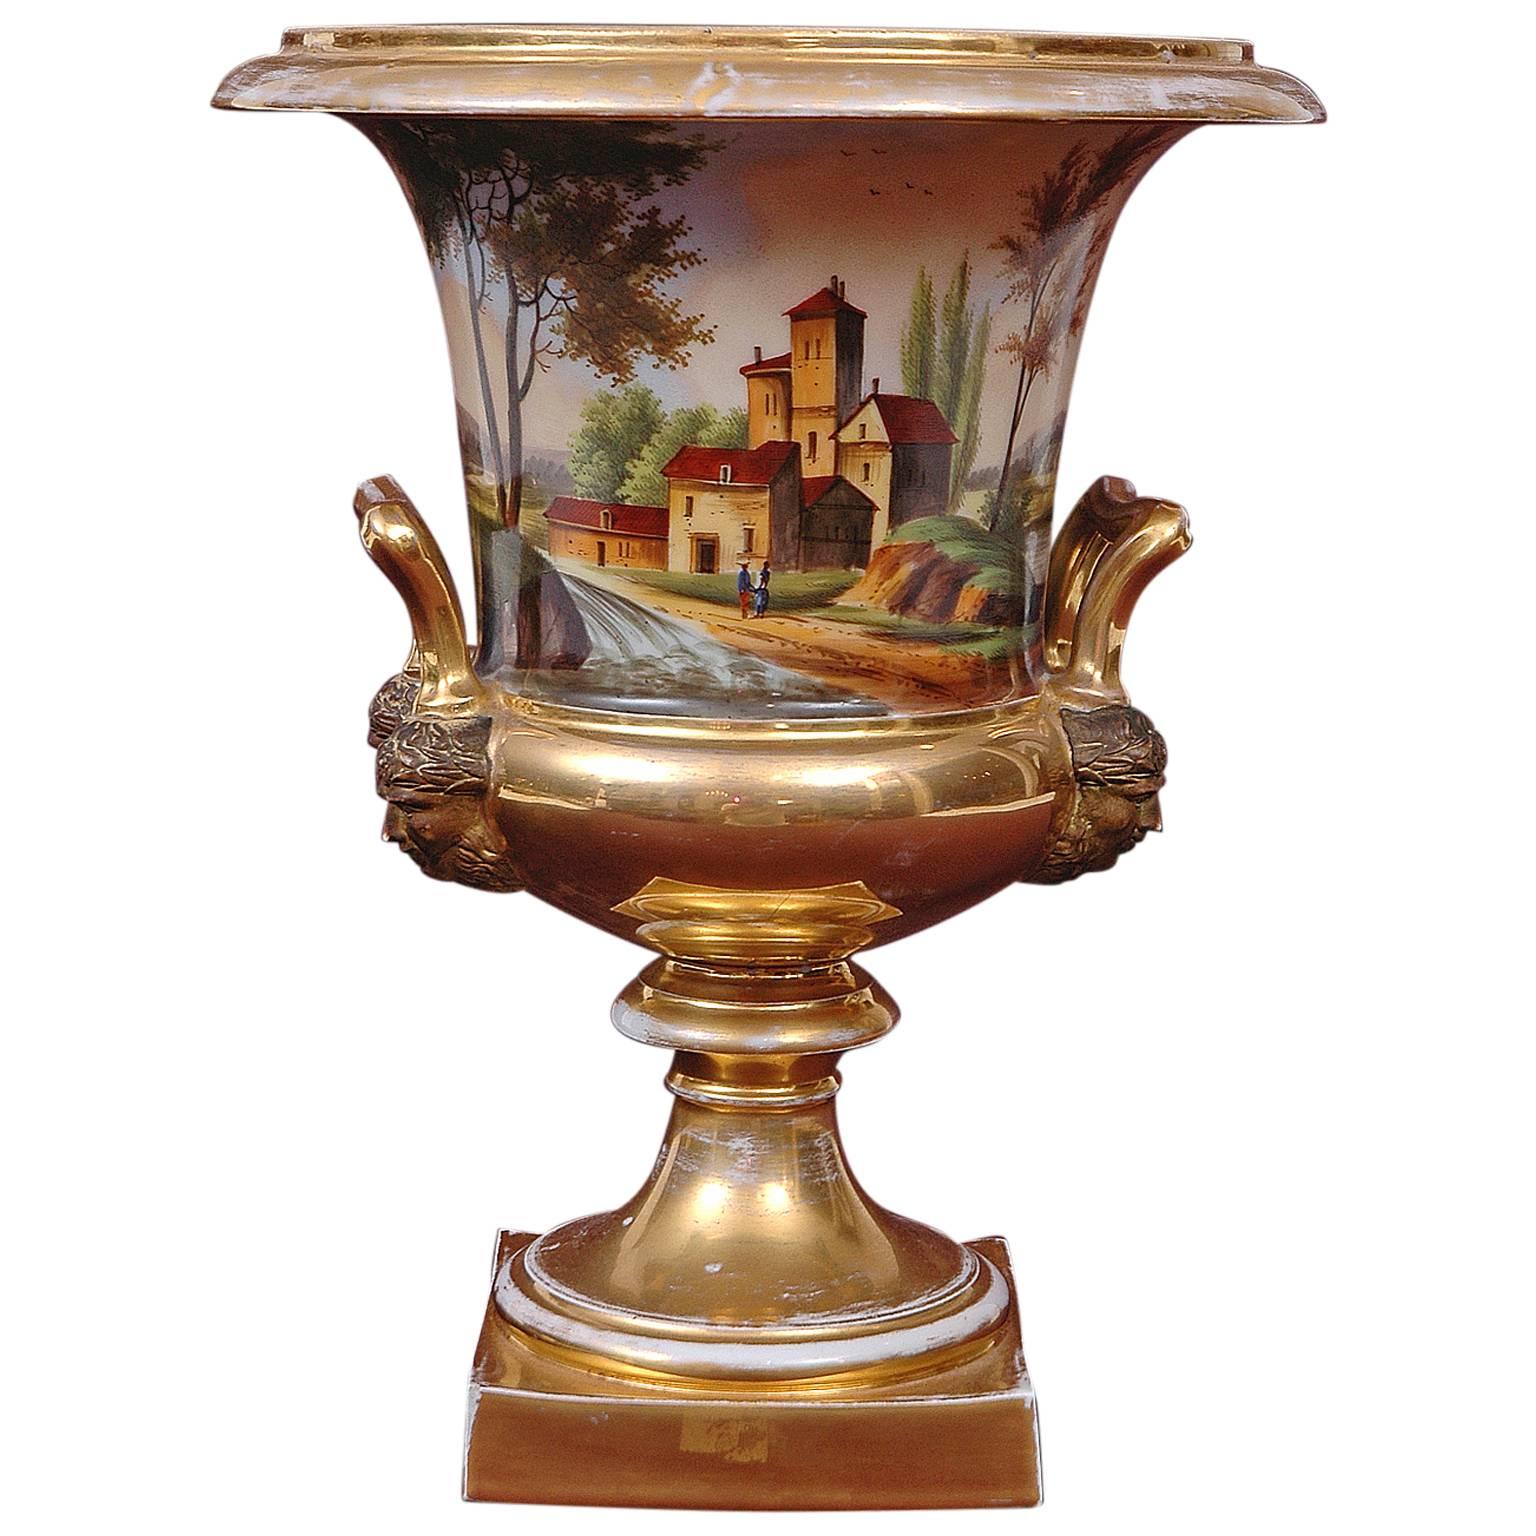 Large Old Paris Porcelain Urn with Romantic Landscape Scenes